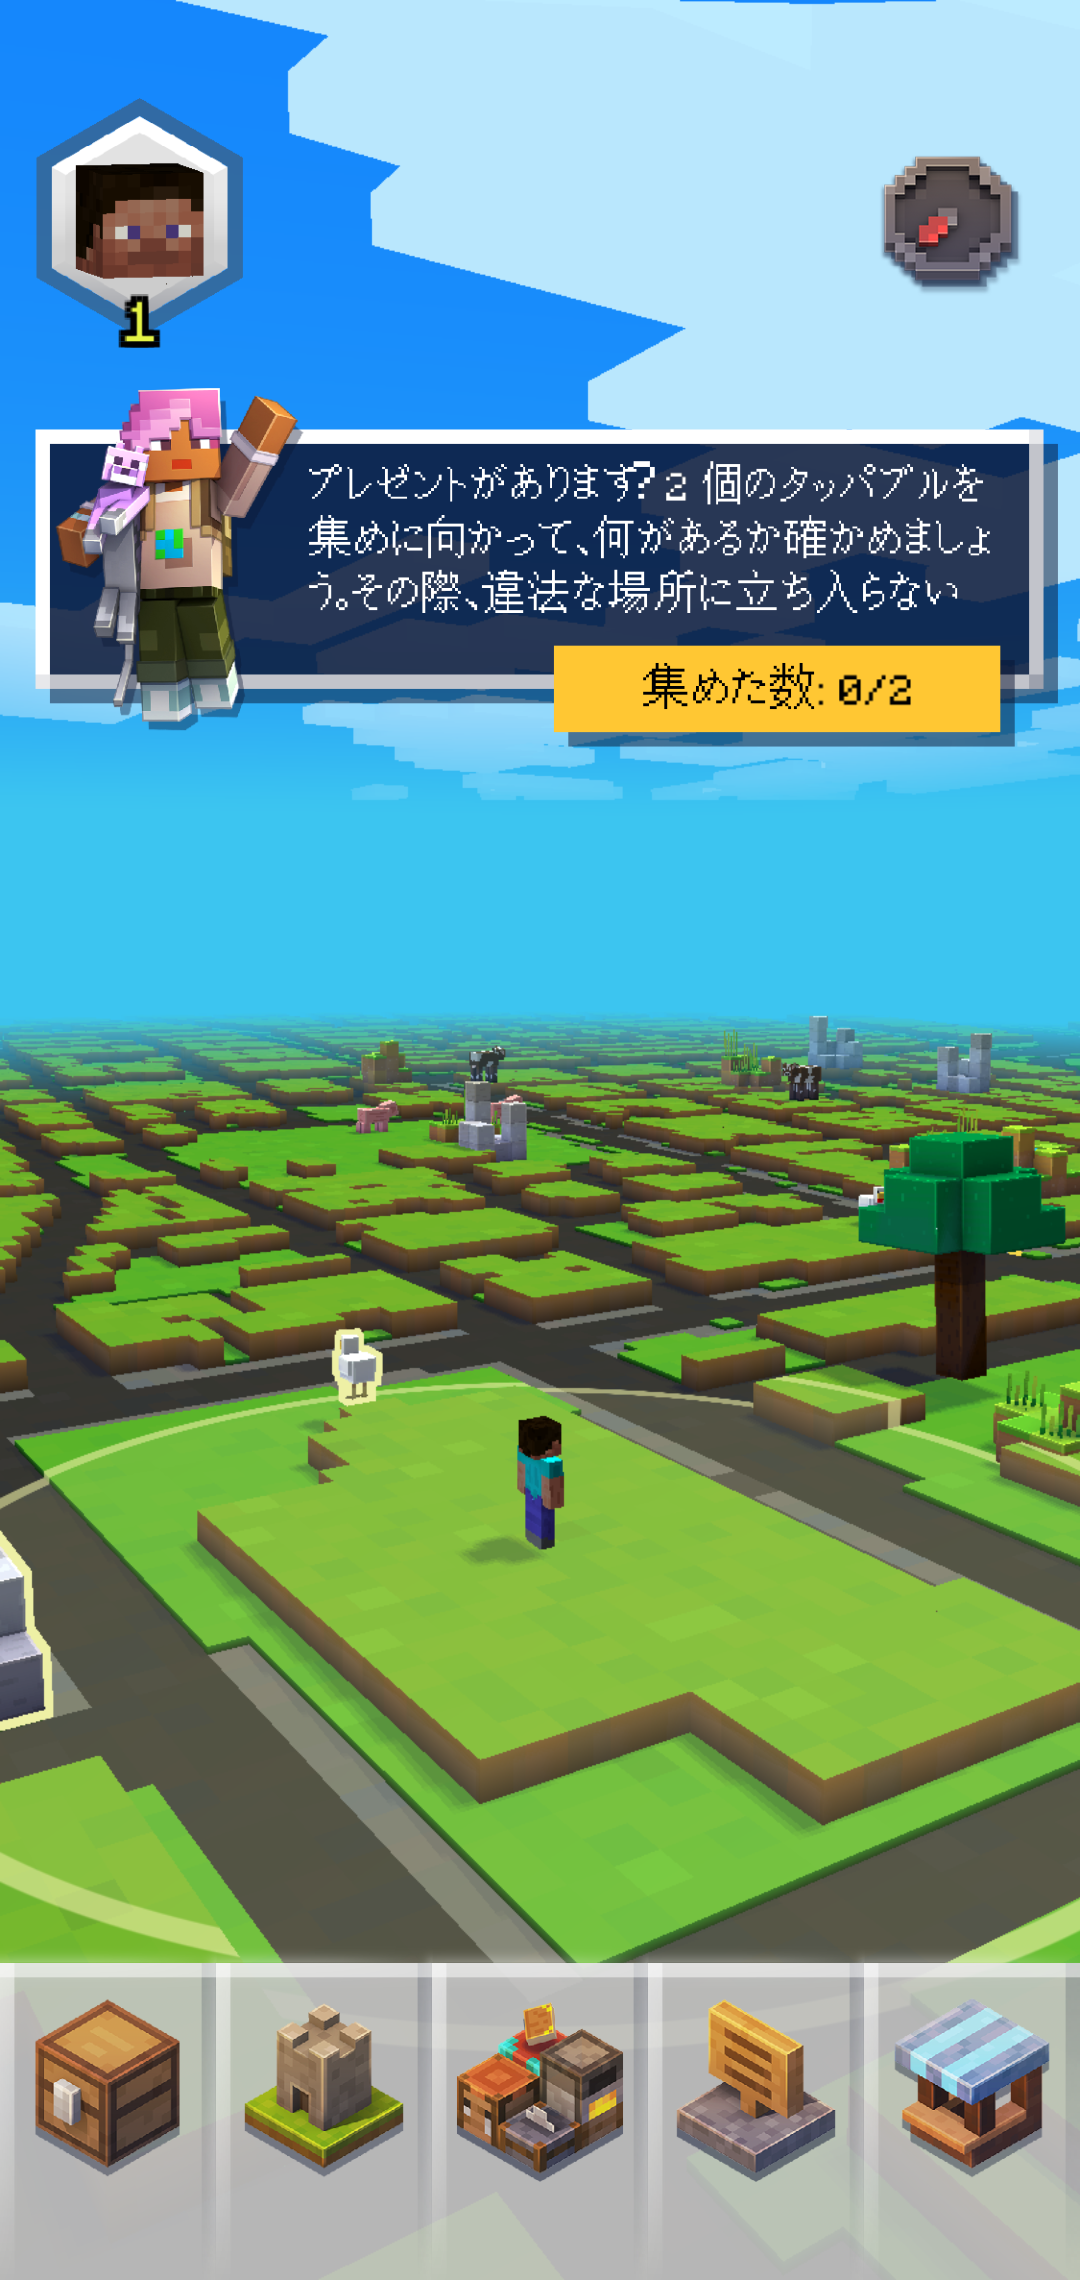 やじうまpc Watch マイクラar版の Minecraft Earth が日本でアーリーアクセス開始 Pc Watch